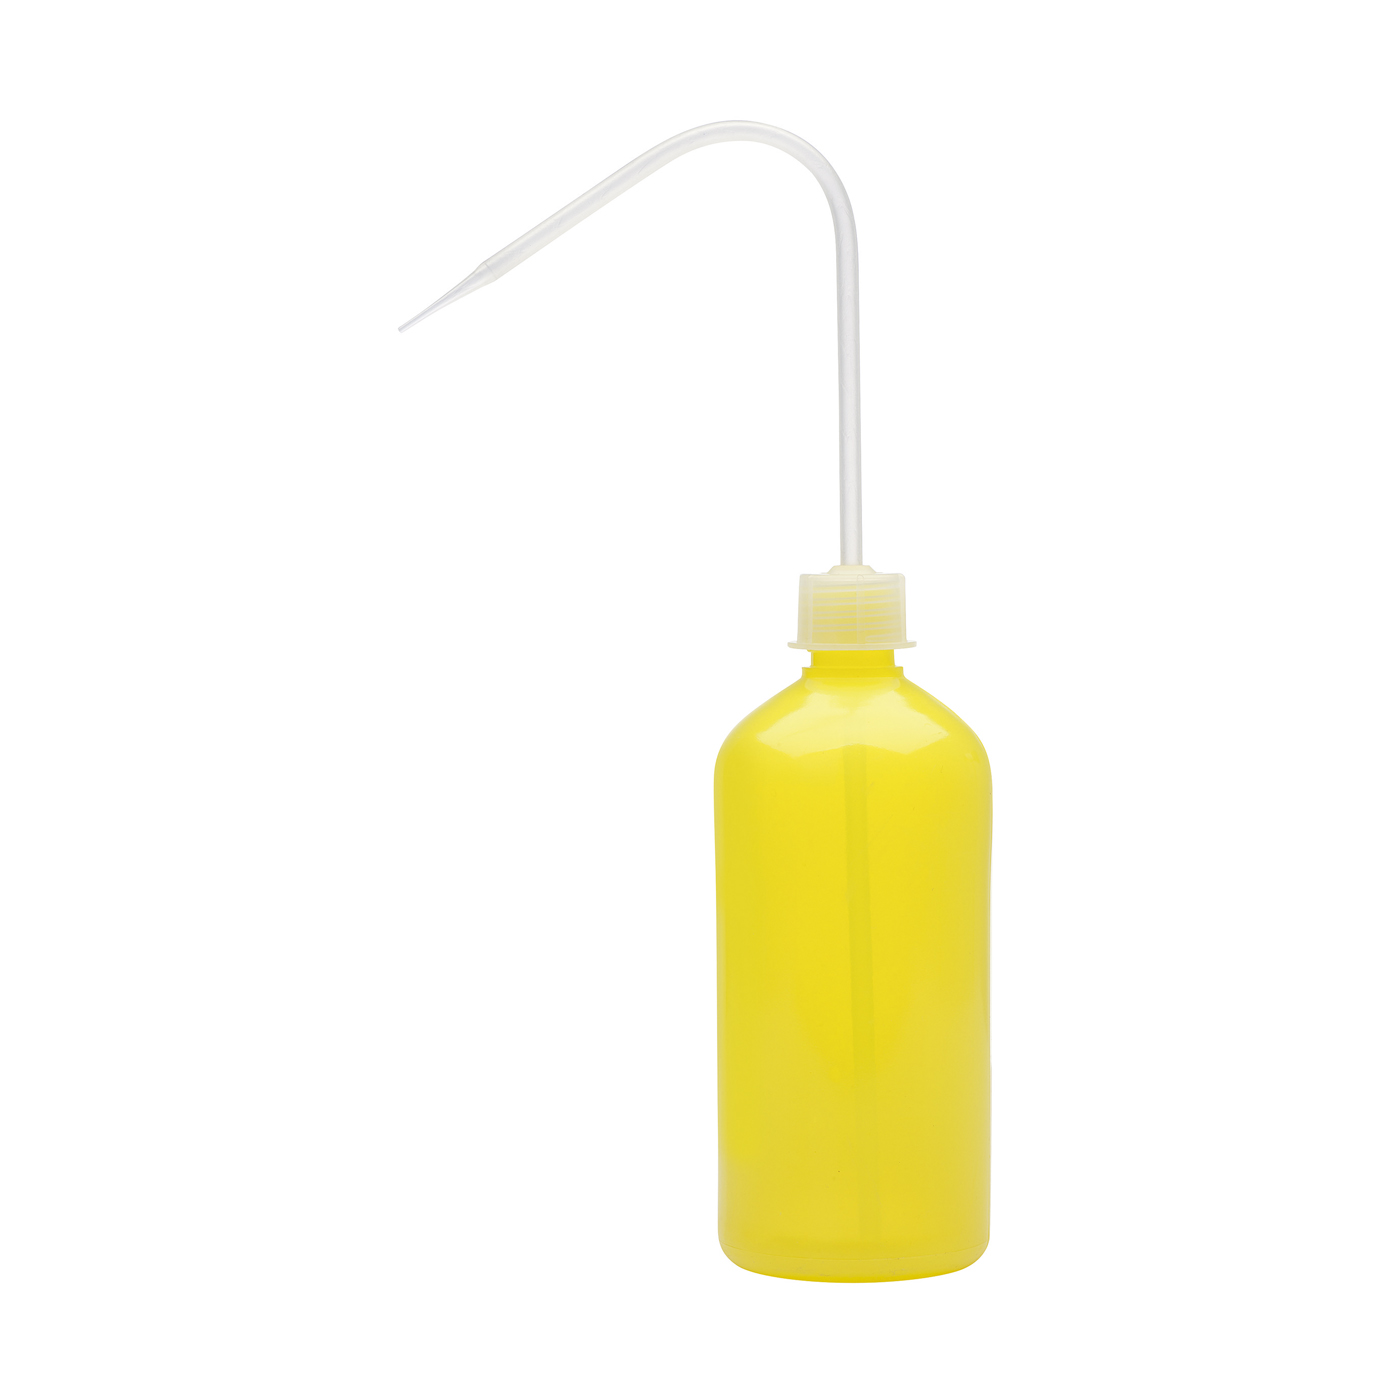 FINO Dosierflasche, gelb, 500 ml - 1 Stück